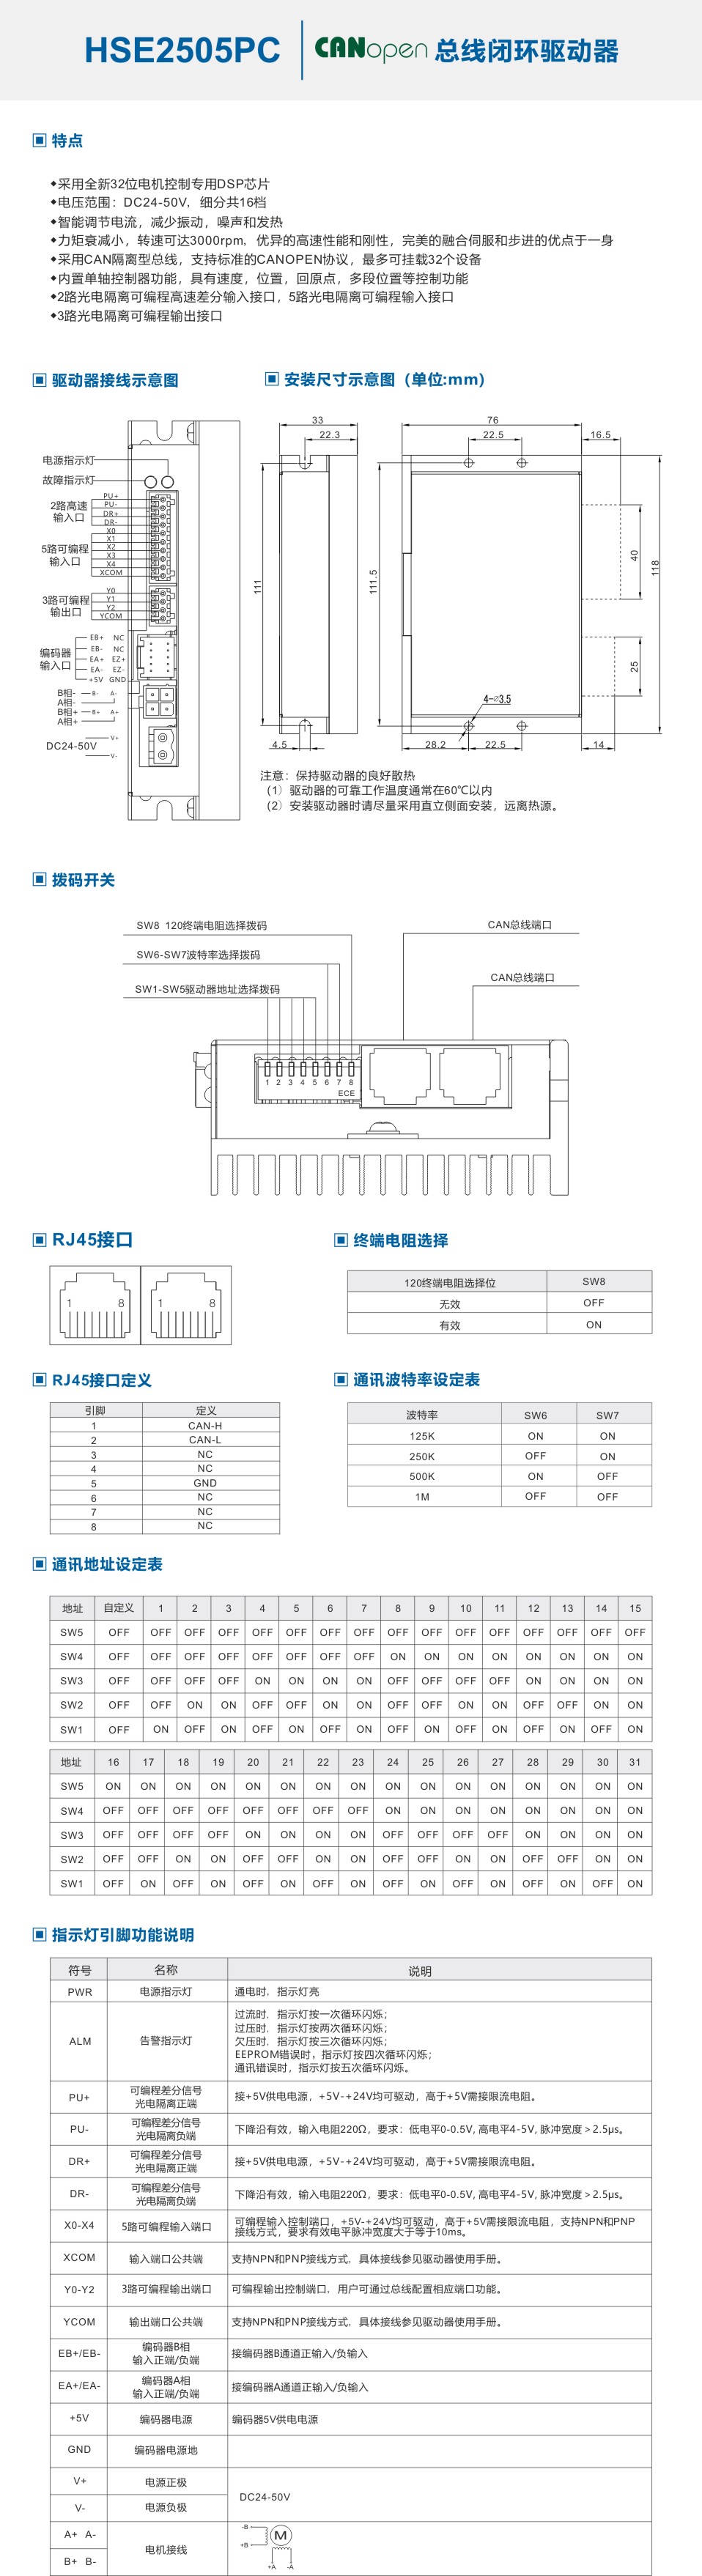 HSE2505PC-中文.jpg